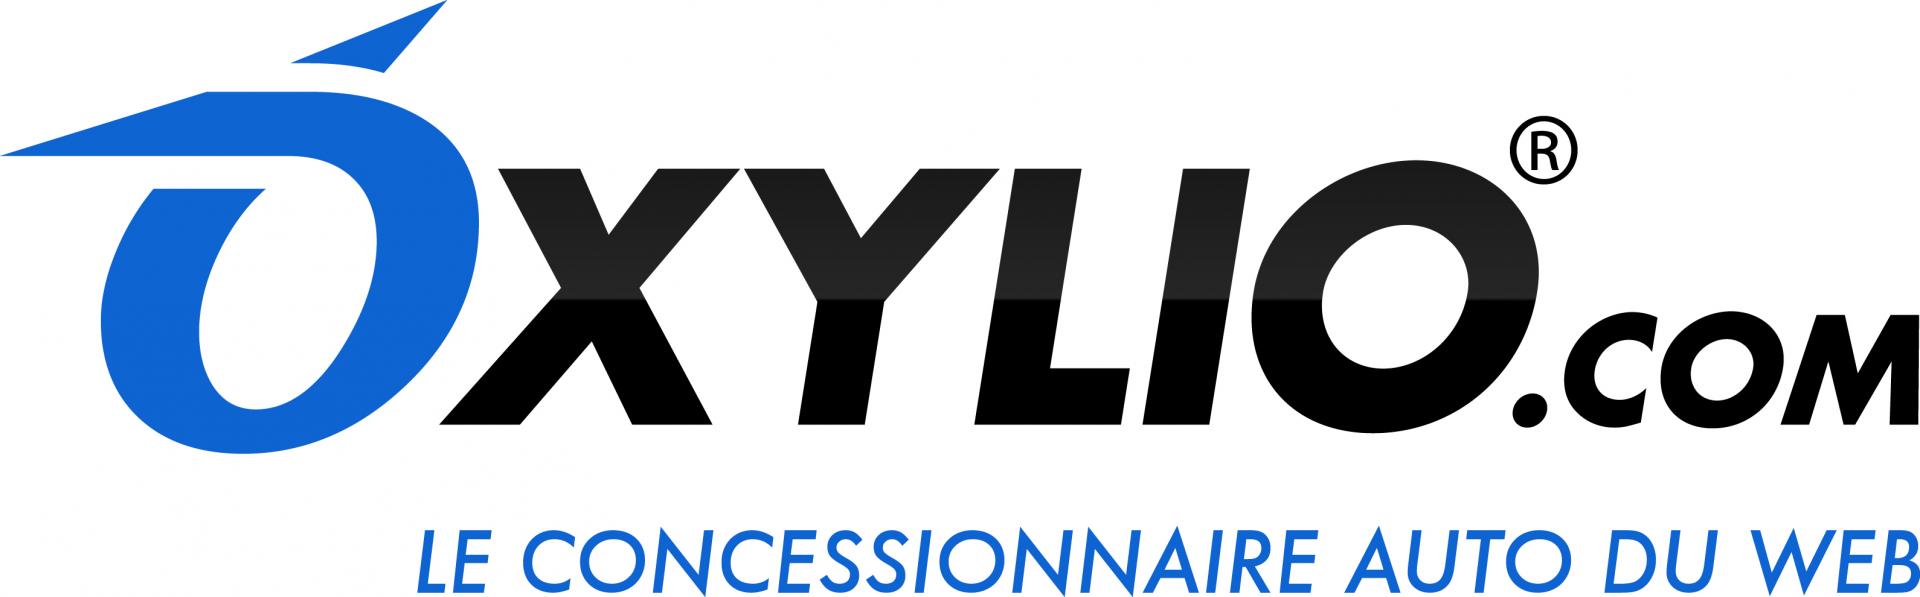 Logo oxylio new bleu